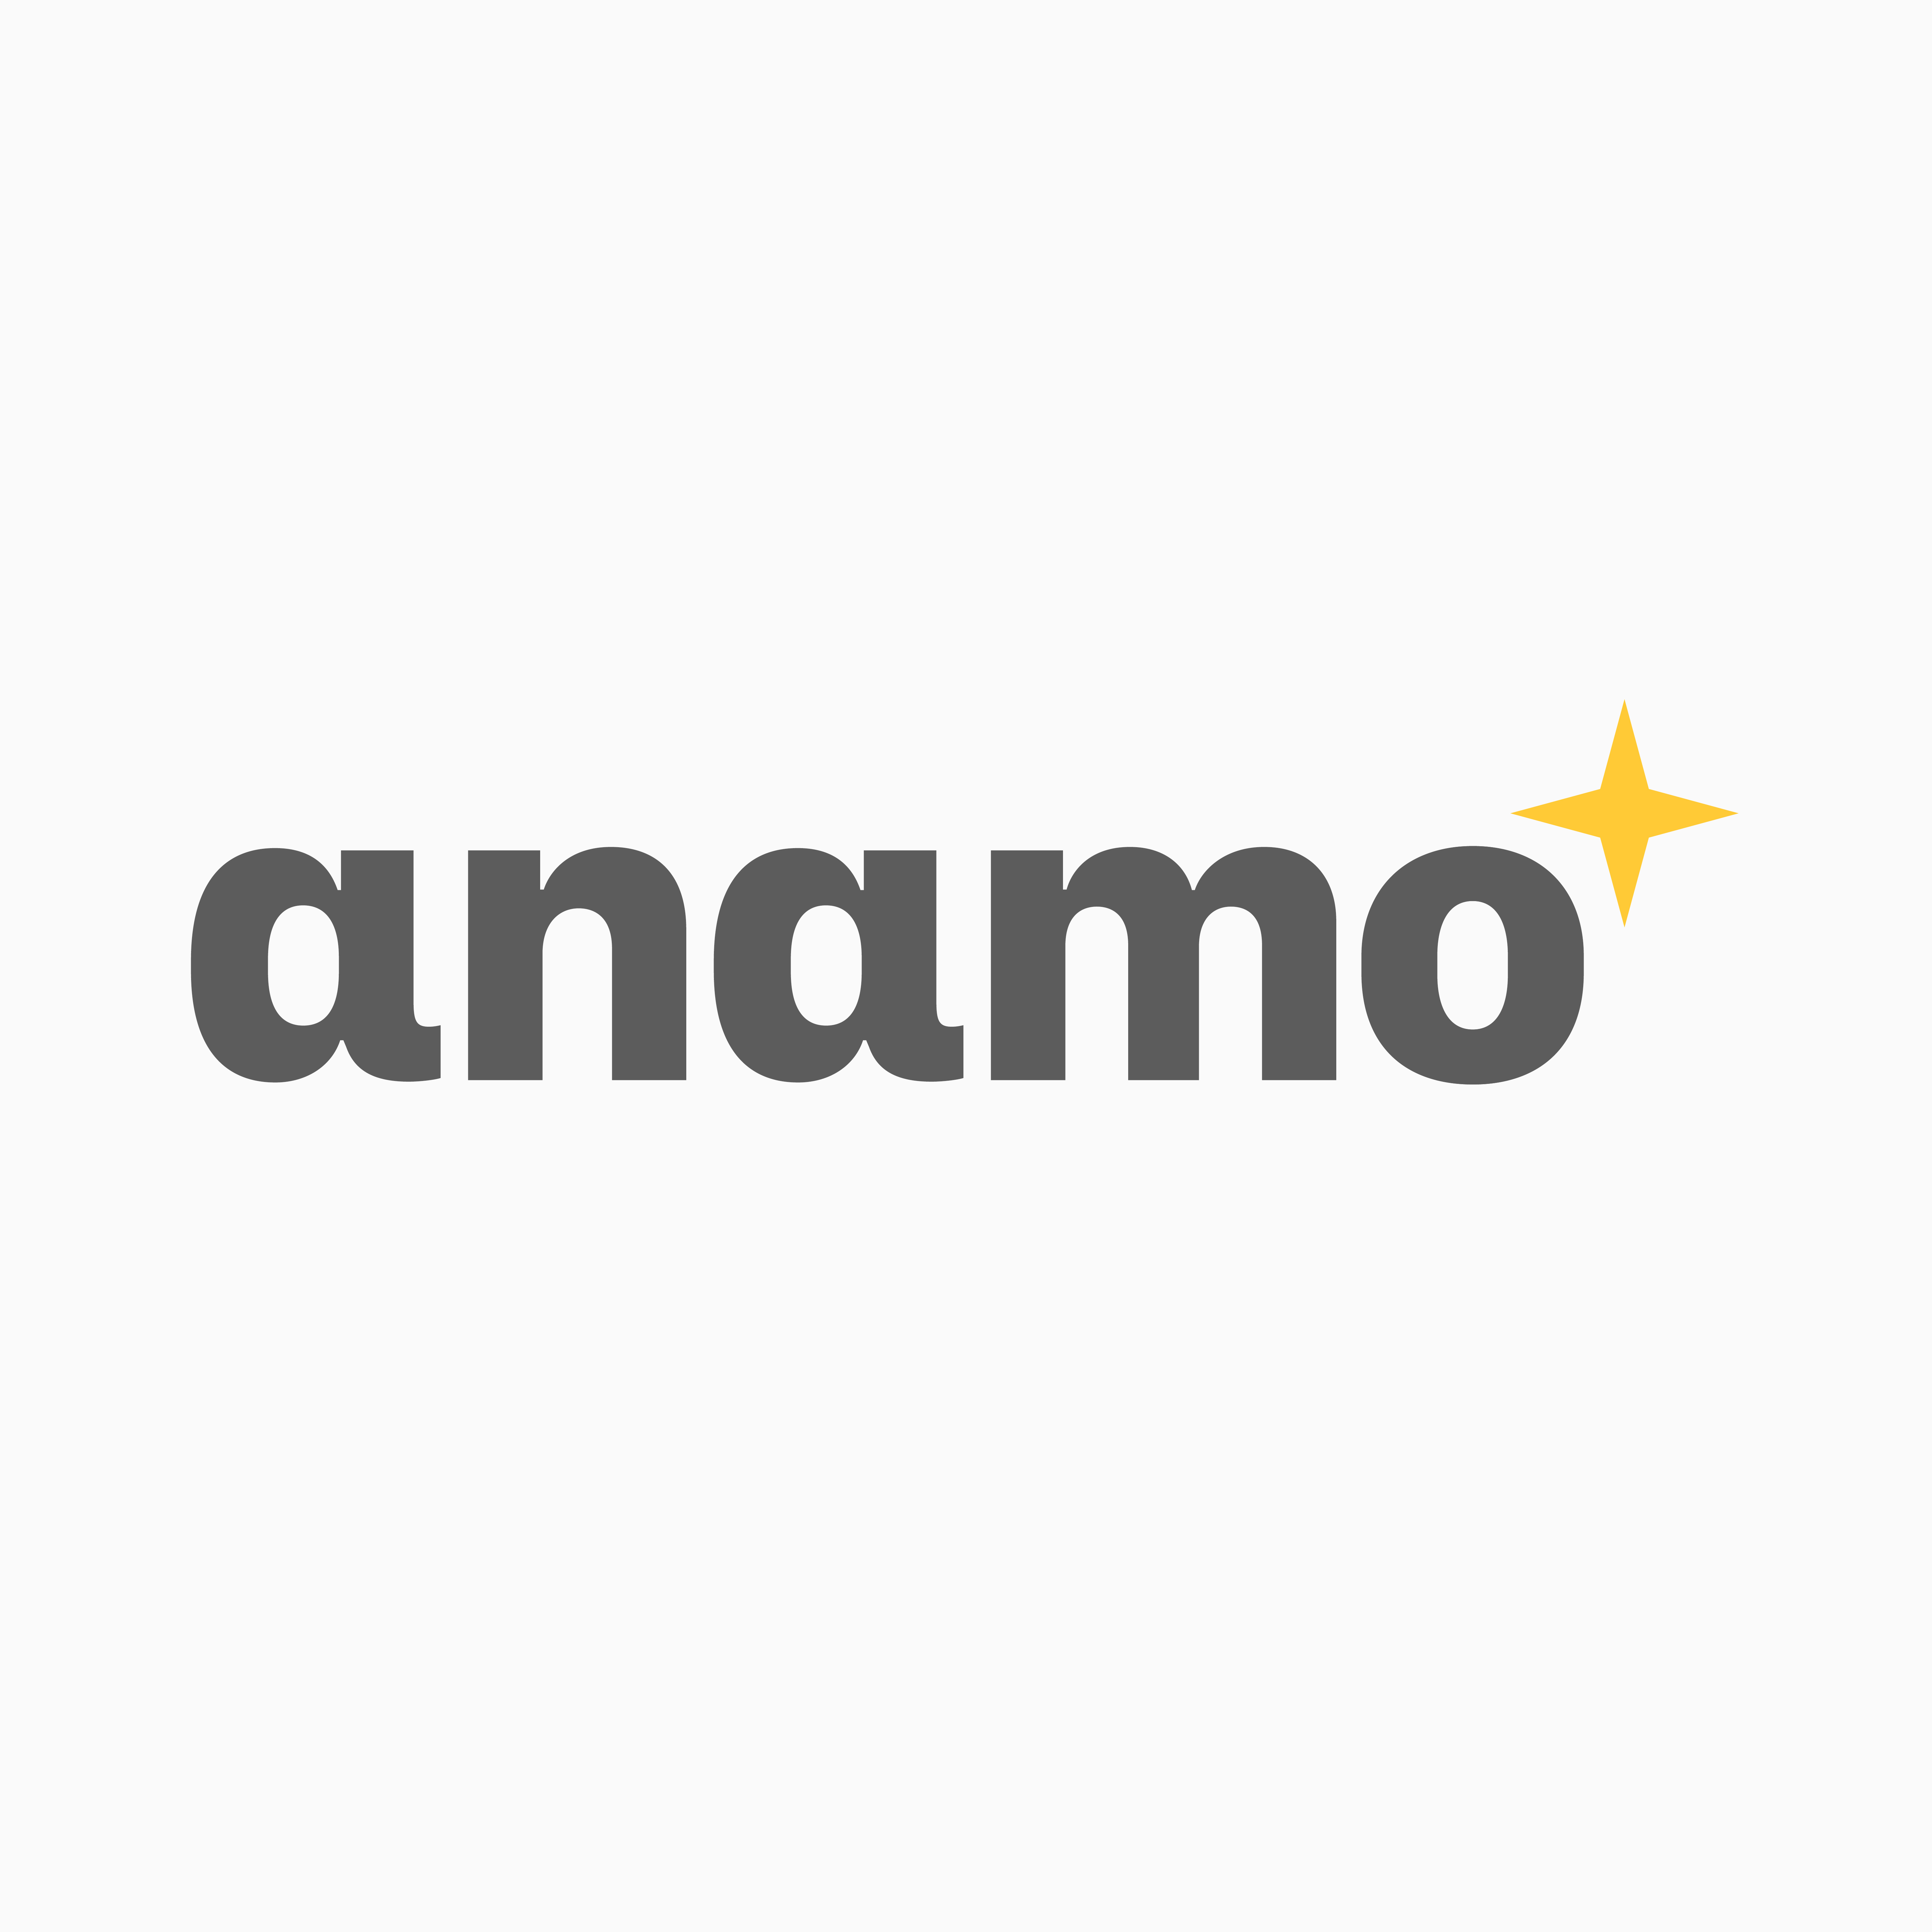 Anamo wordmark (logotype)